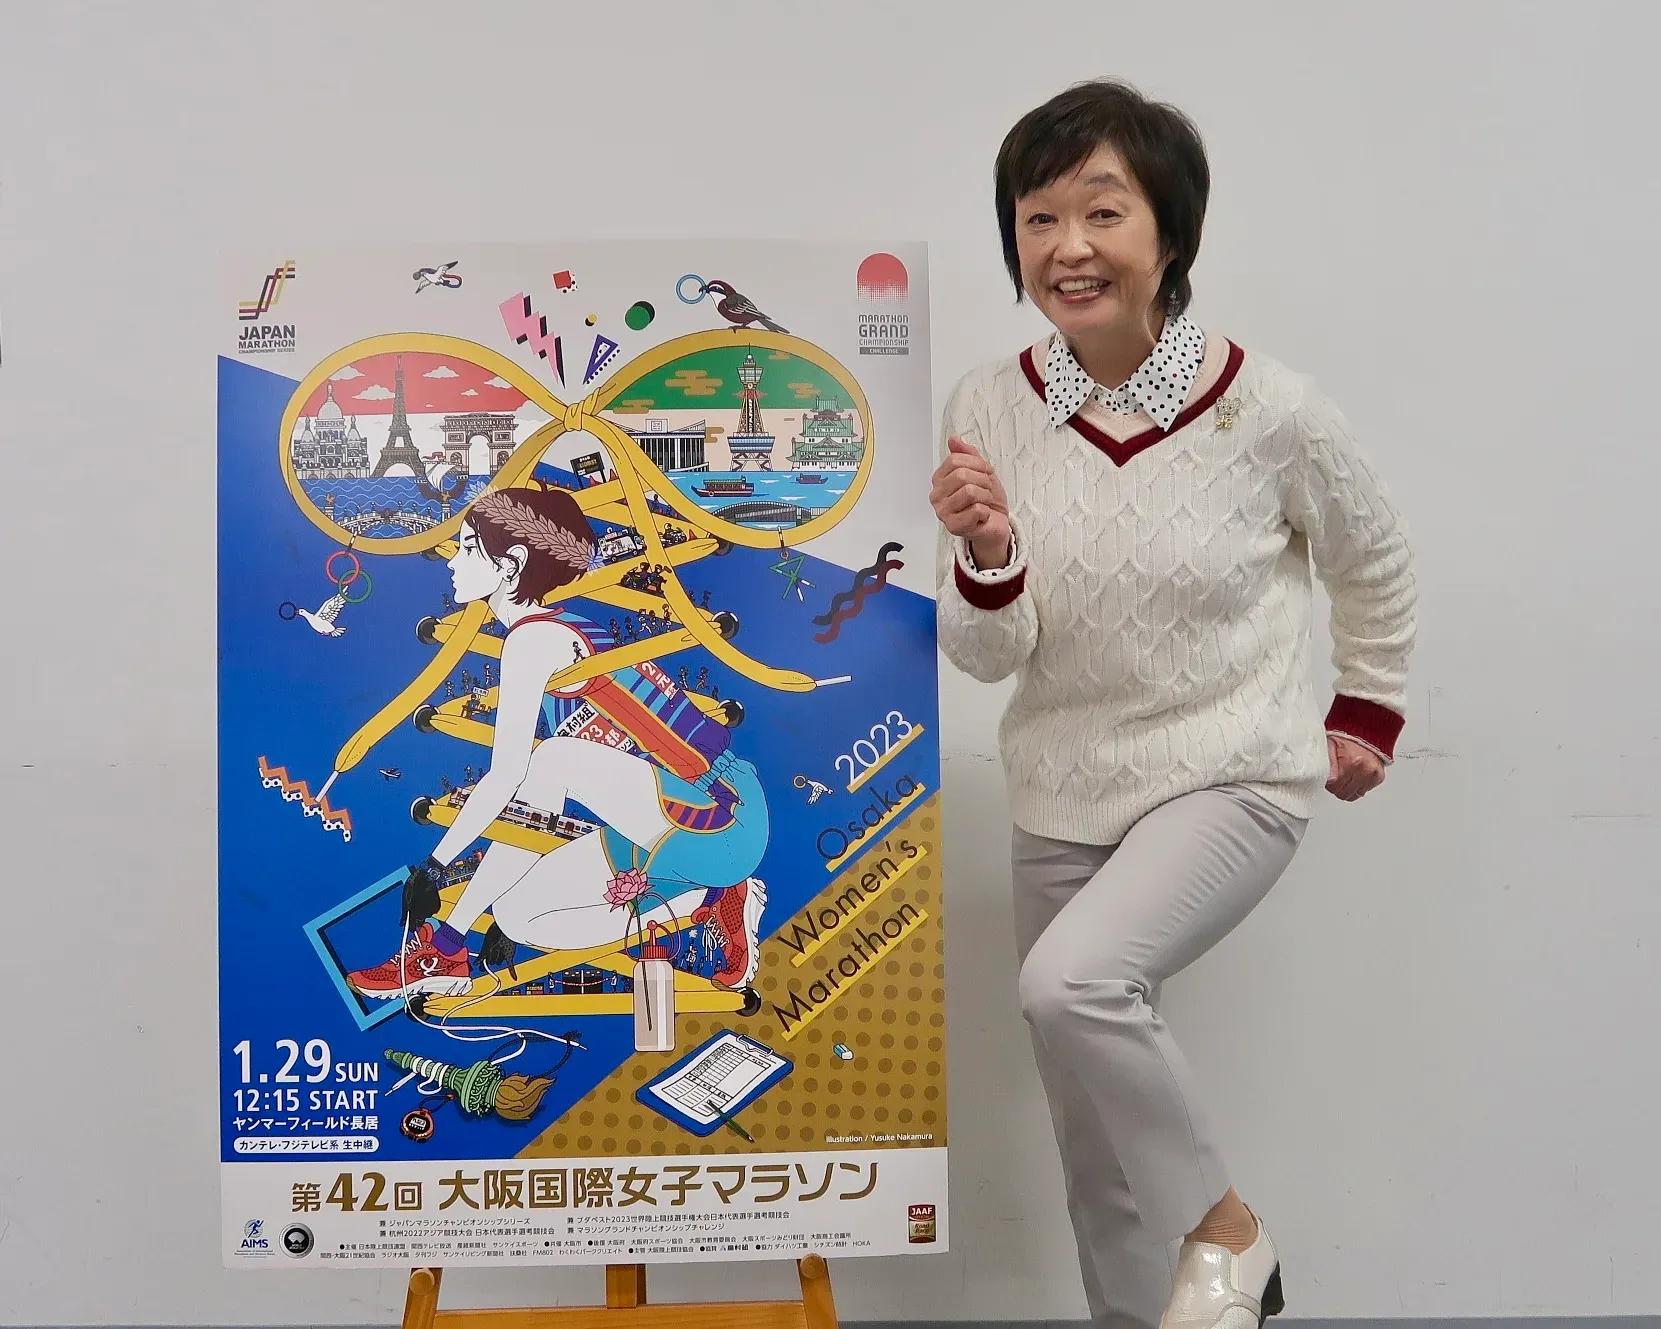 増田明美が語る大阪国際女子マラソン「ピョンと飛躍して世界に向かえそうな顔ぶれ」_bodies